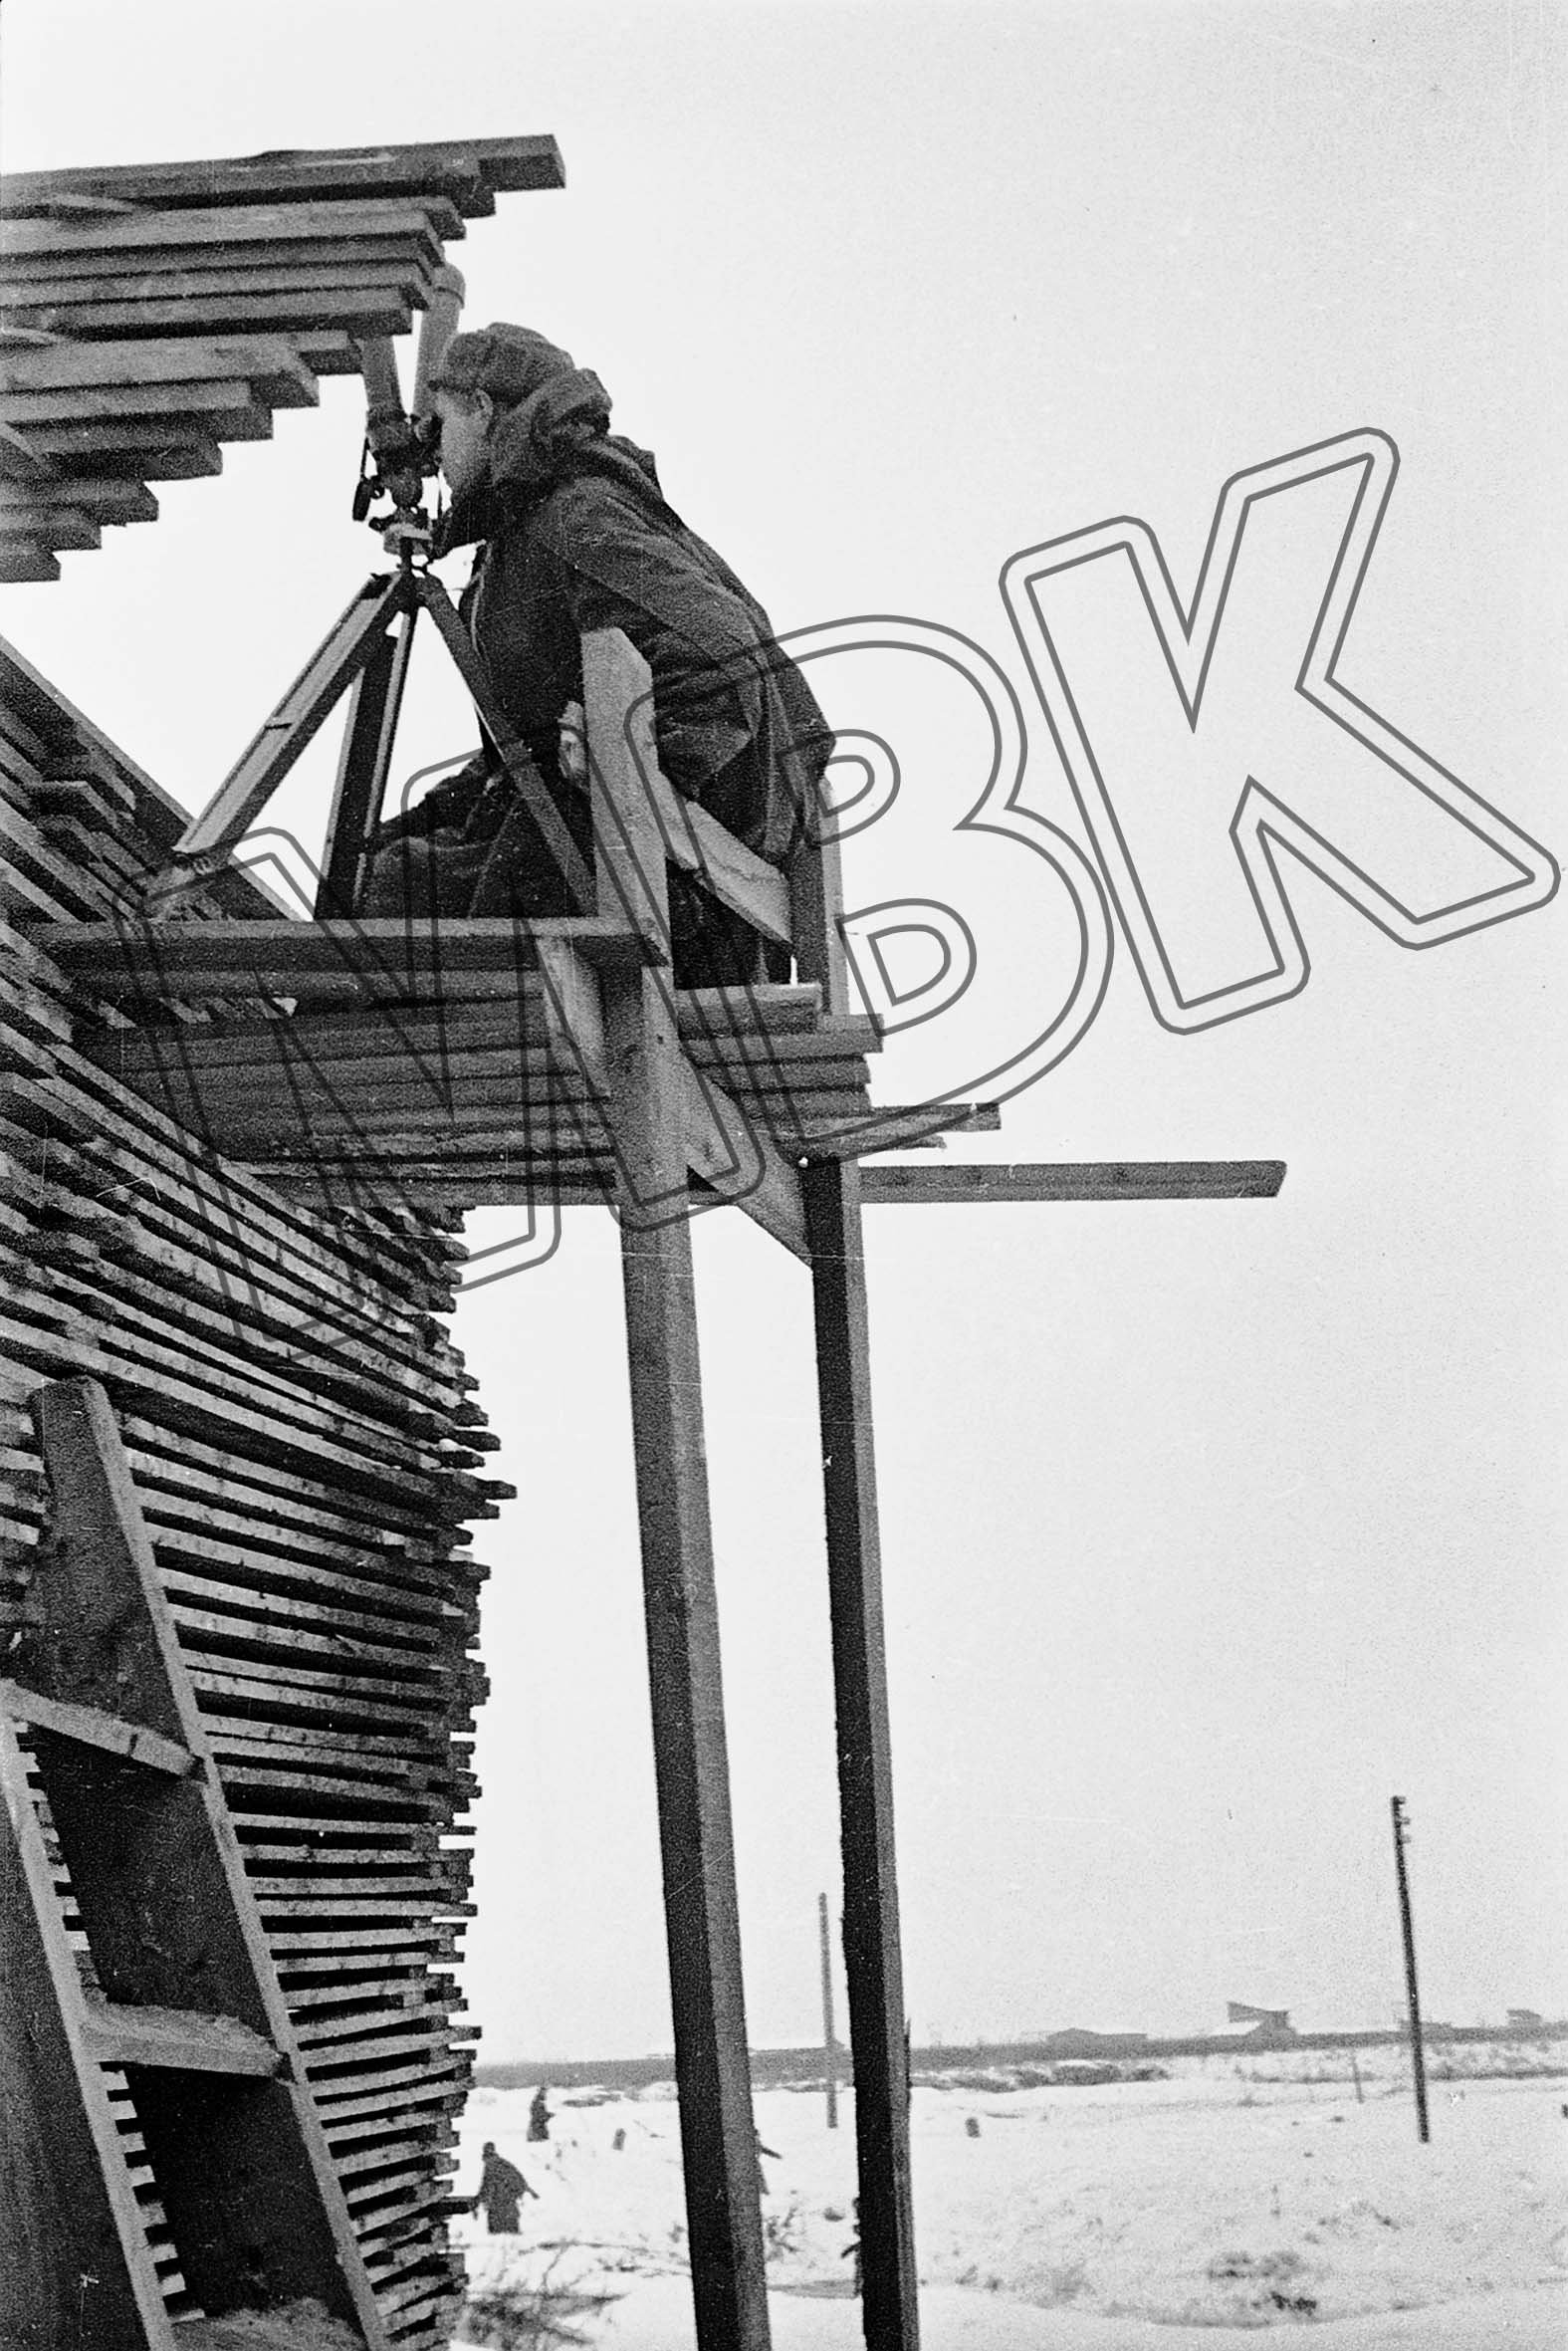 Sowjetischer Soldat auf Beobachtungsposten, vermutlich bei Newski Pjatatschok, Leningrader Gebiet, Winter 1941/42 (Museum Berlin-Karlshorst RR-P)